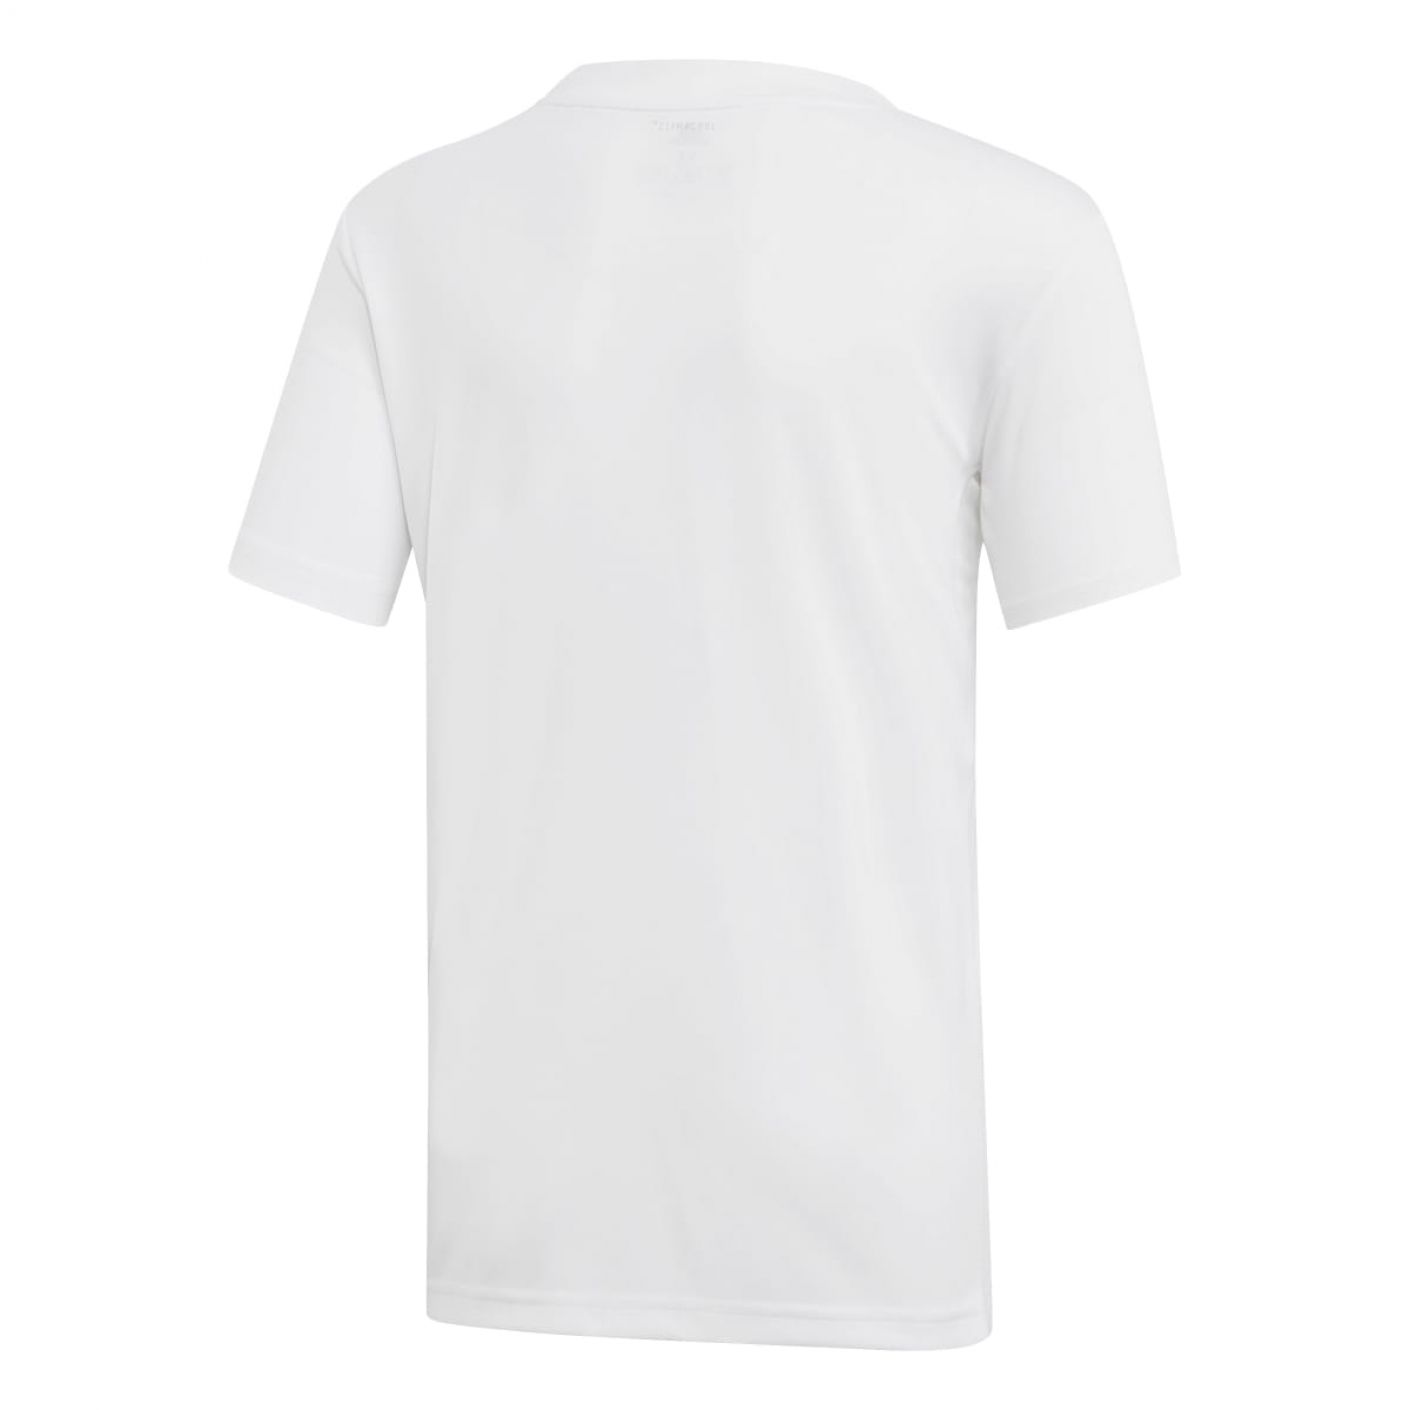 Adidas T-shirt 3-Stripes Club